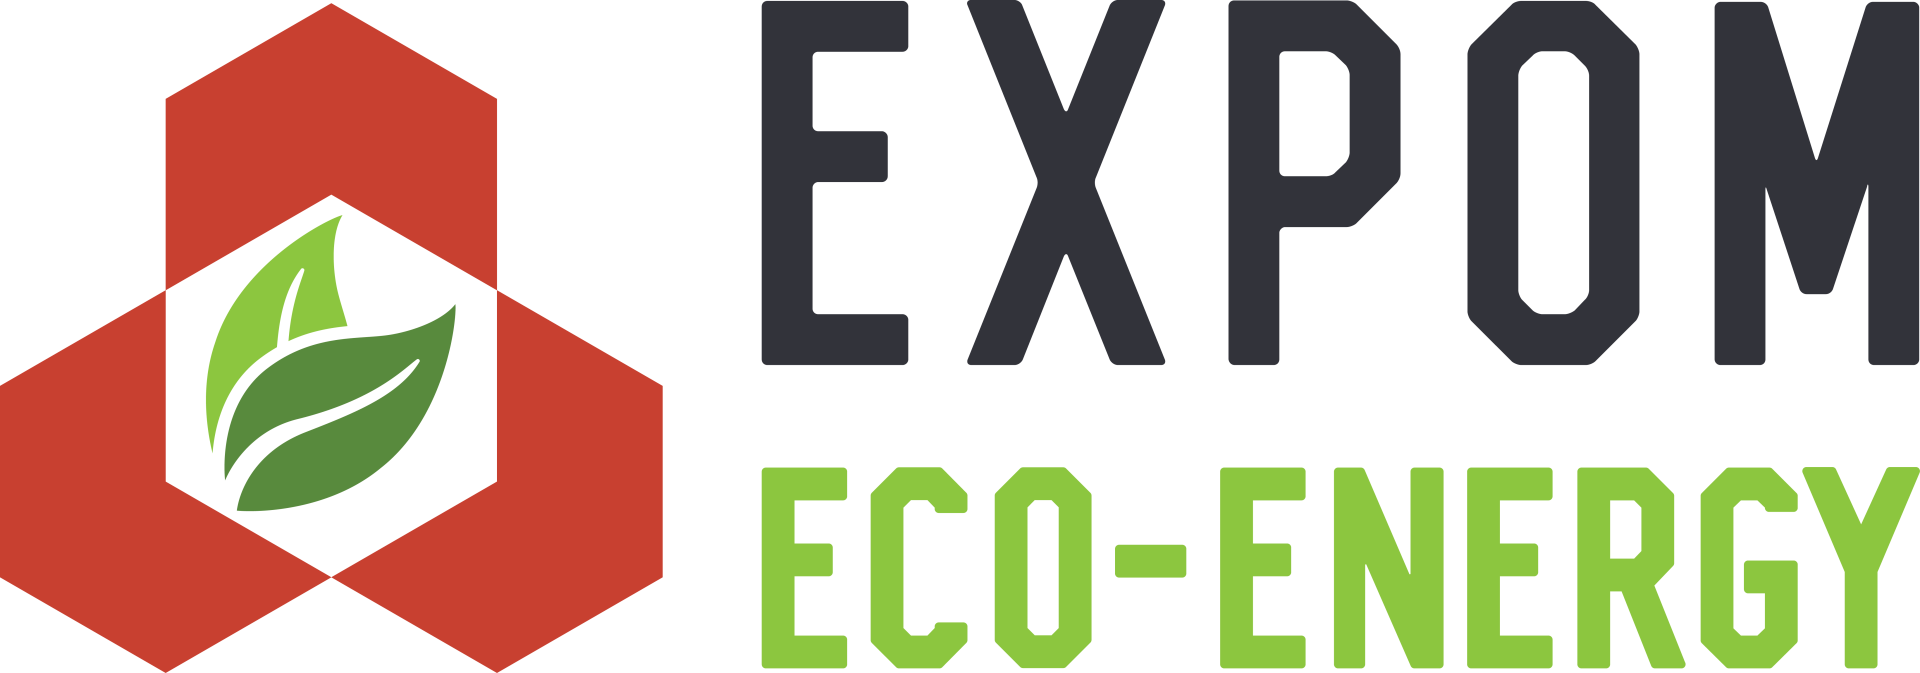 Expom eco energy - poziome